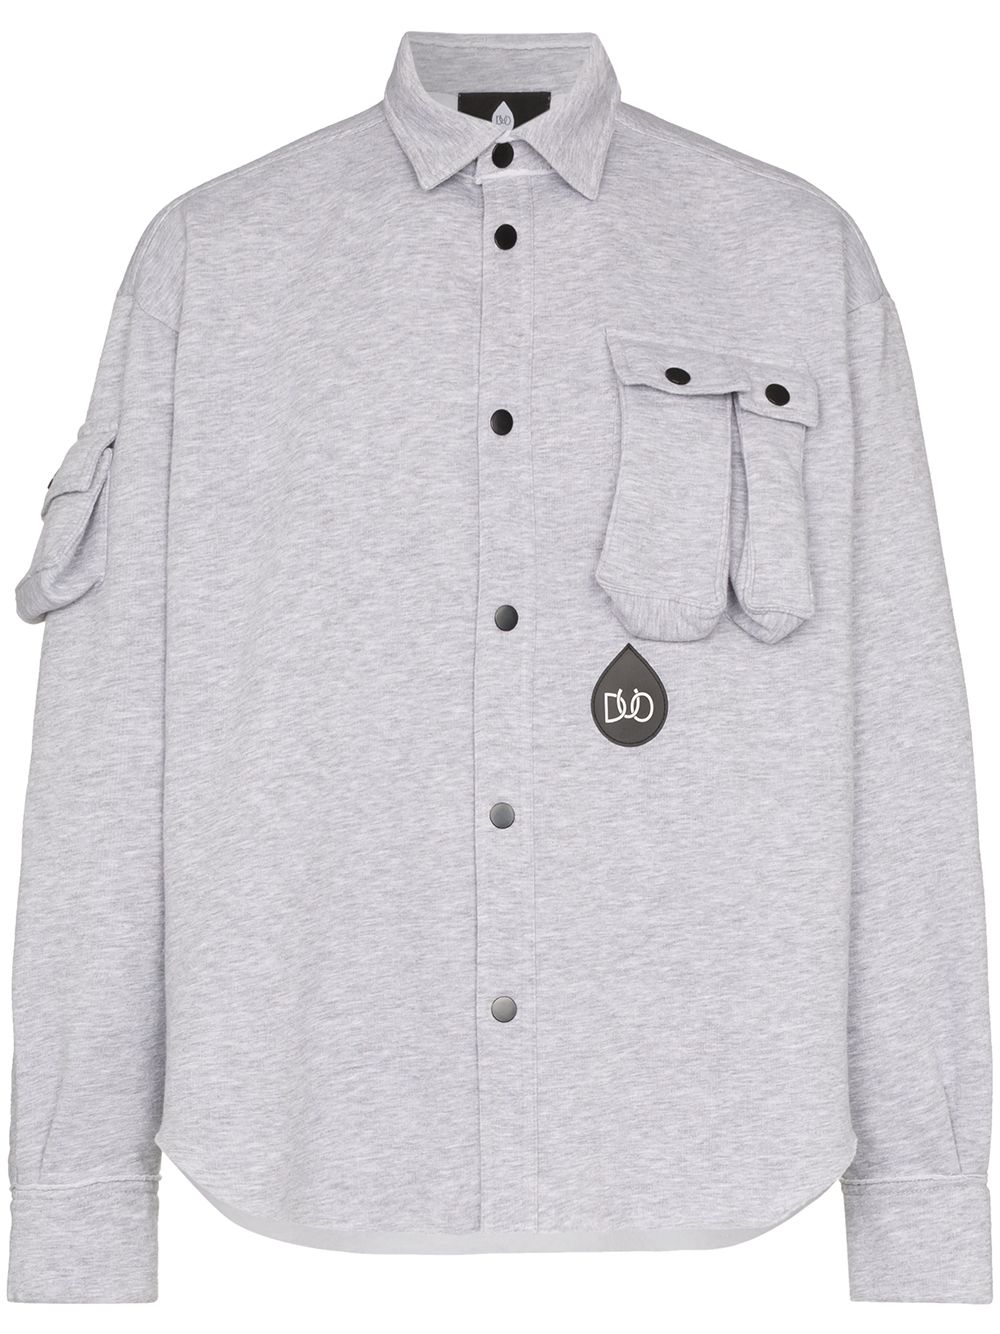 DUOltd button-up jersey shirt - Grey von DUOltd